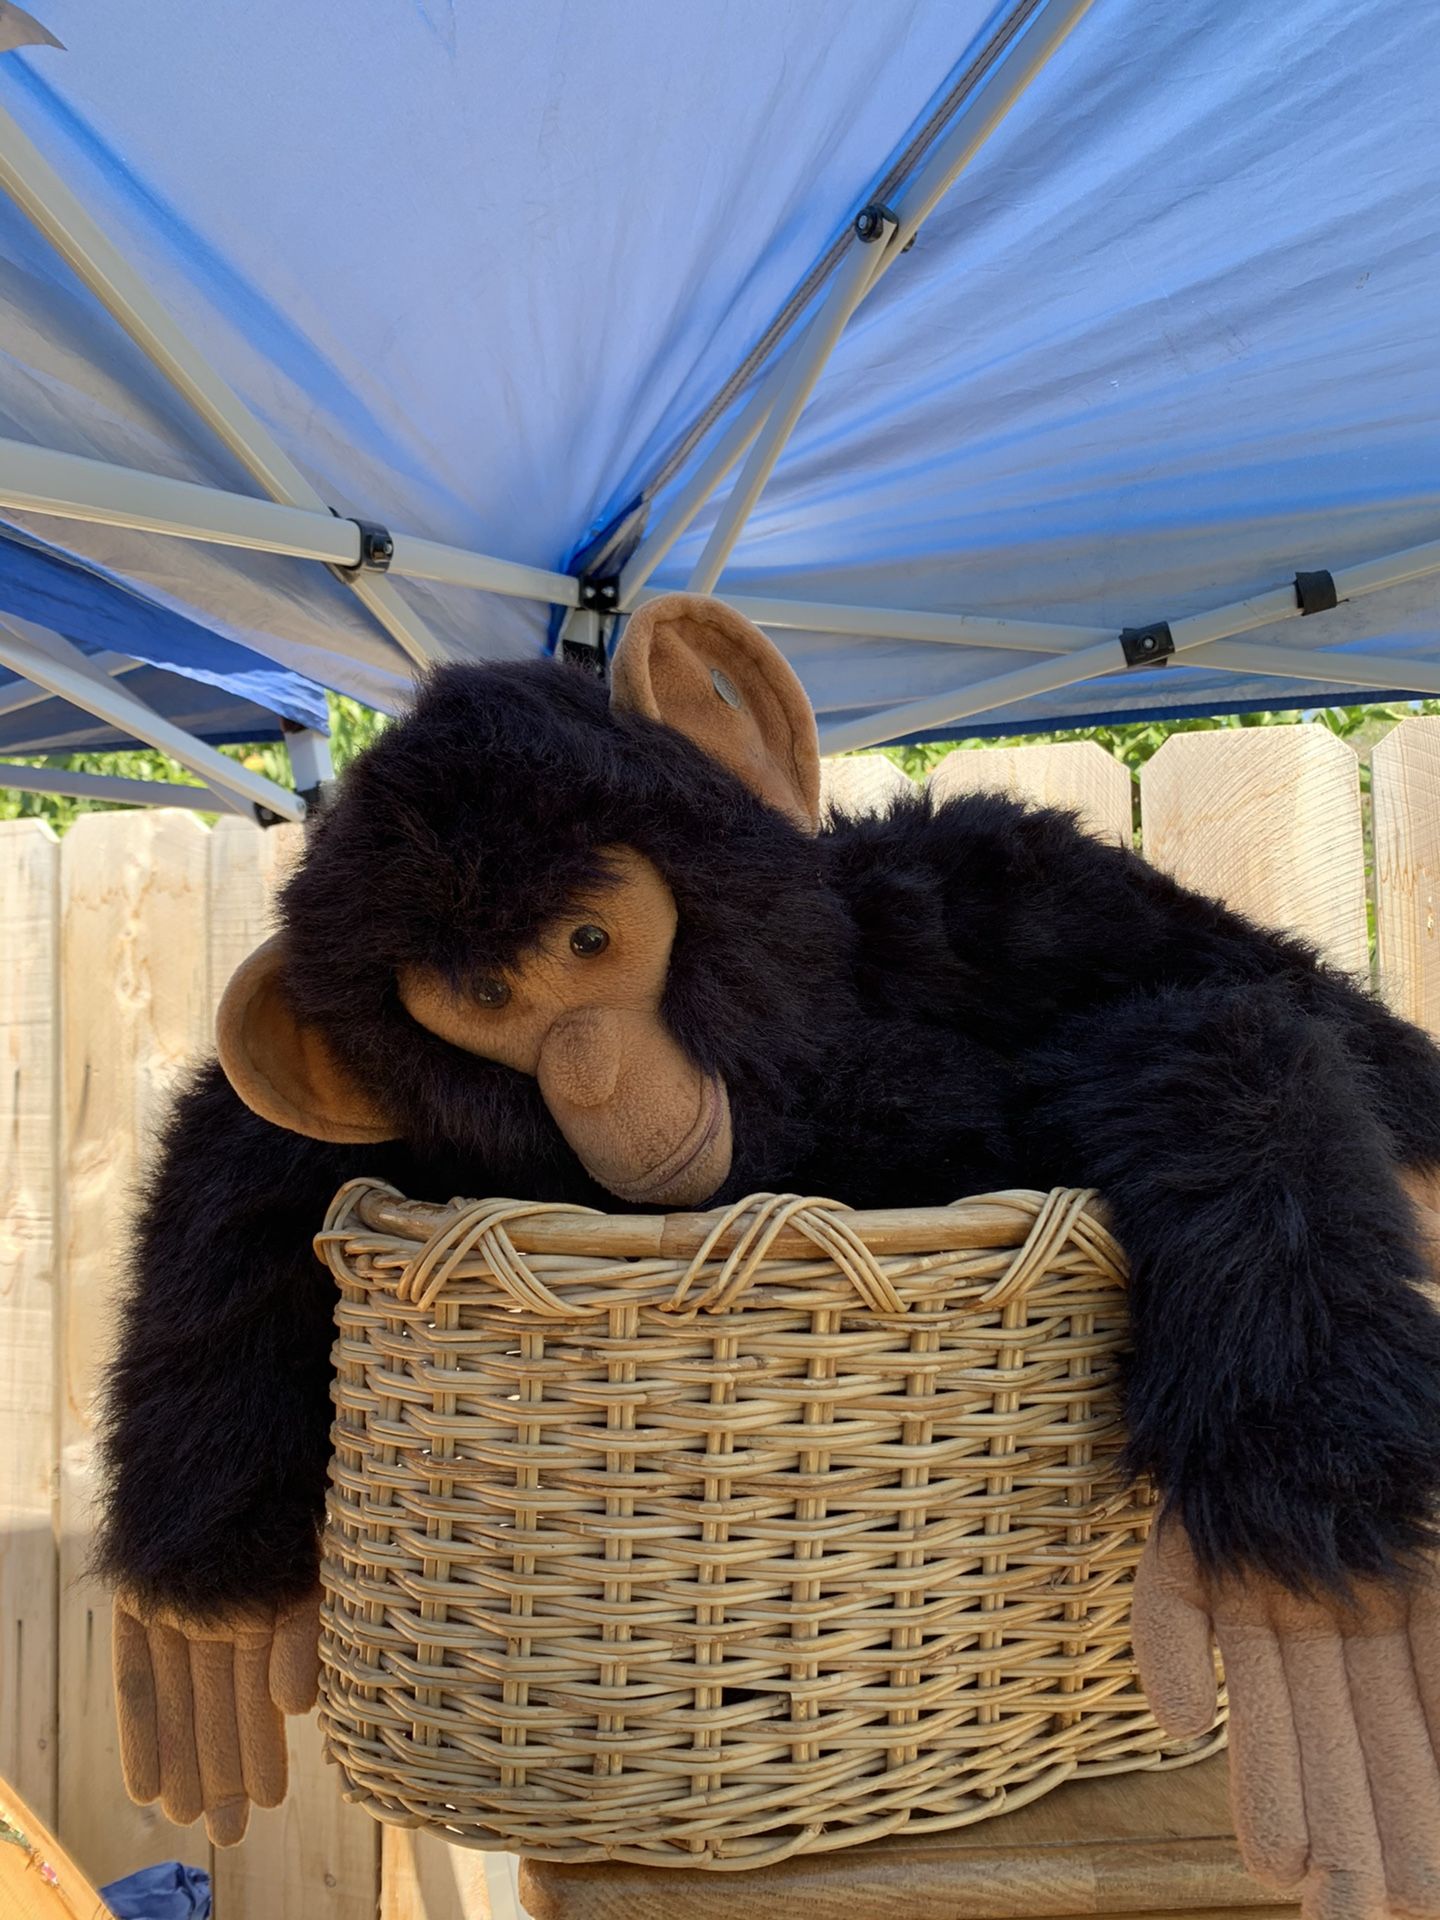 Monkey in basket